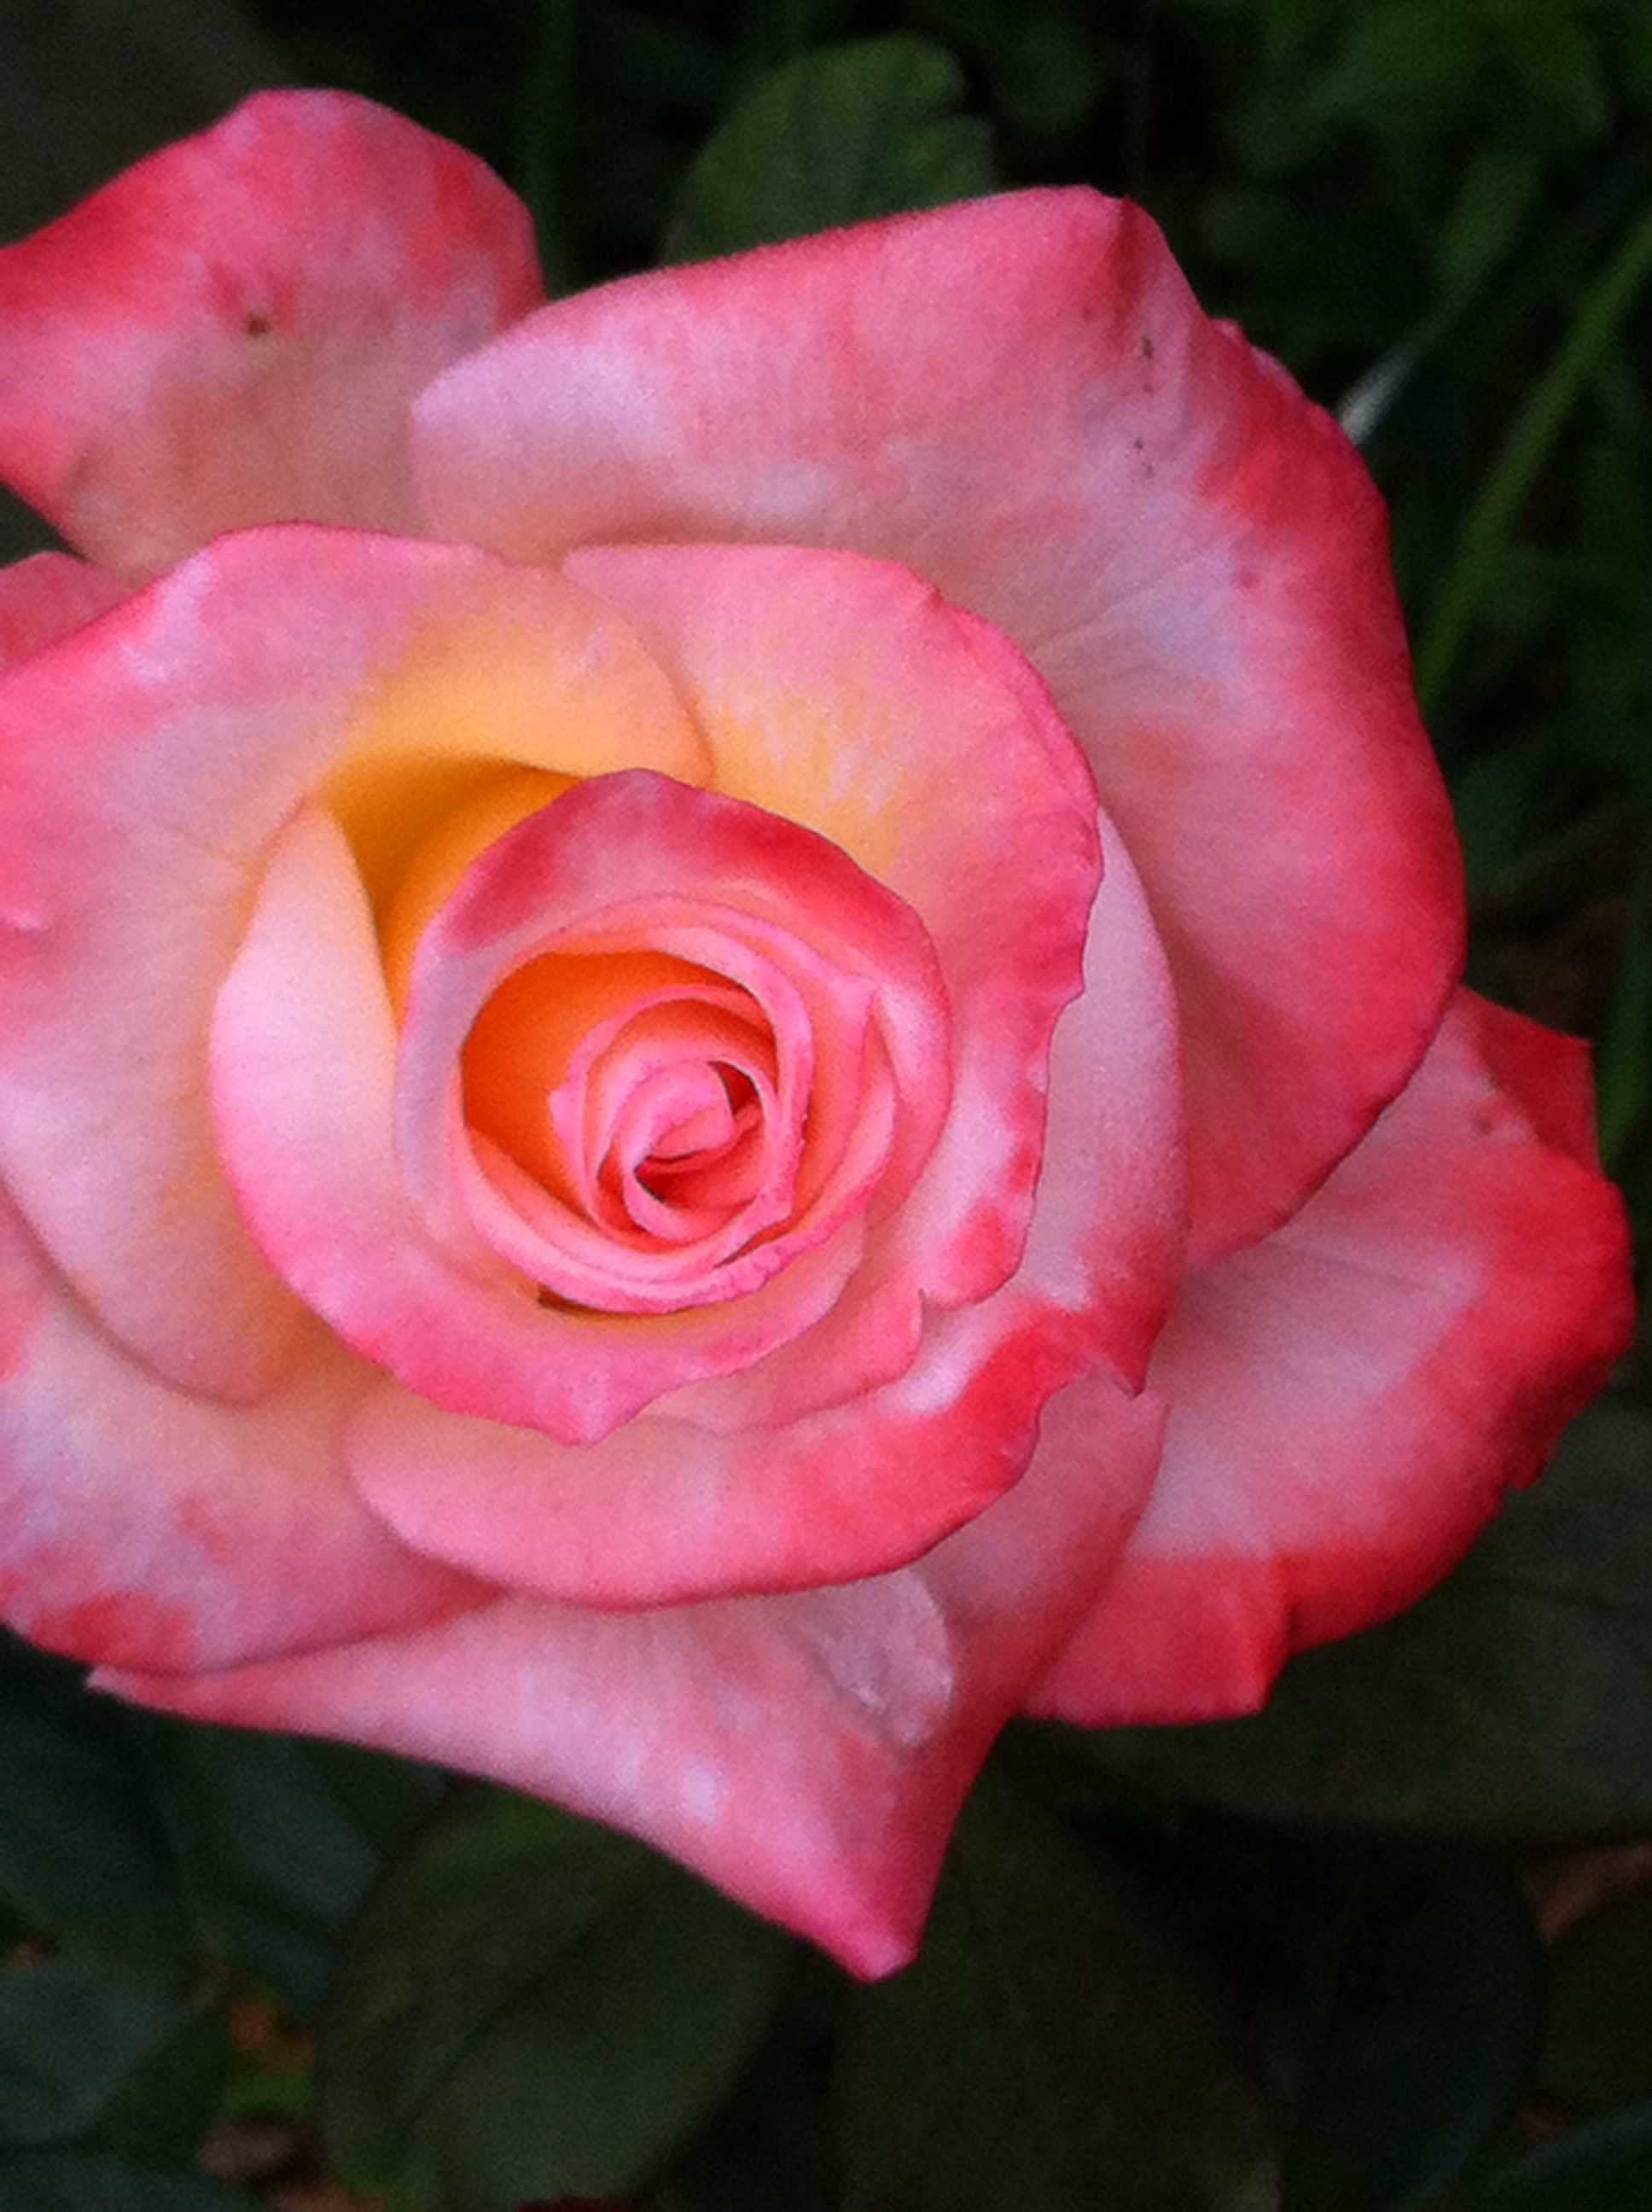 Rose tears | Nikki's Flowers :) | Pinterest | Flowers